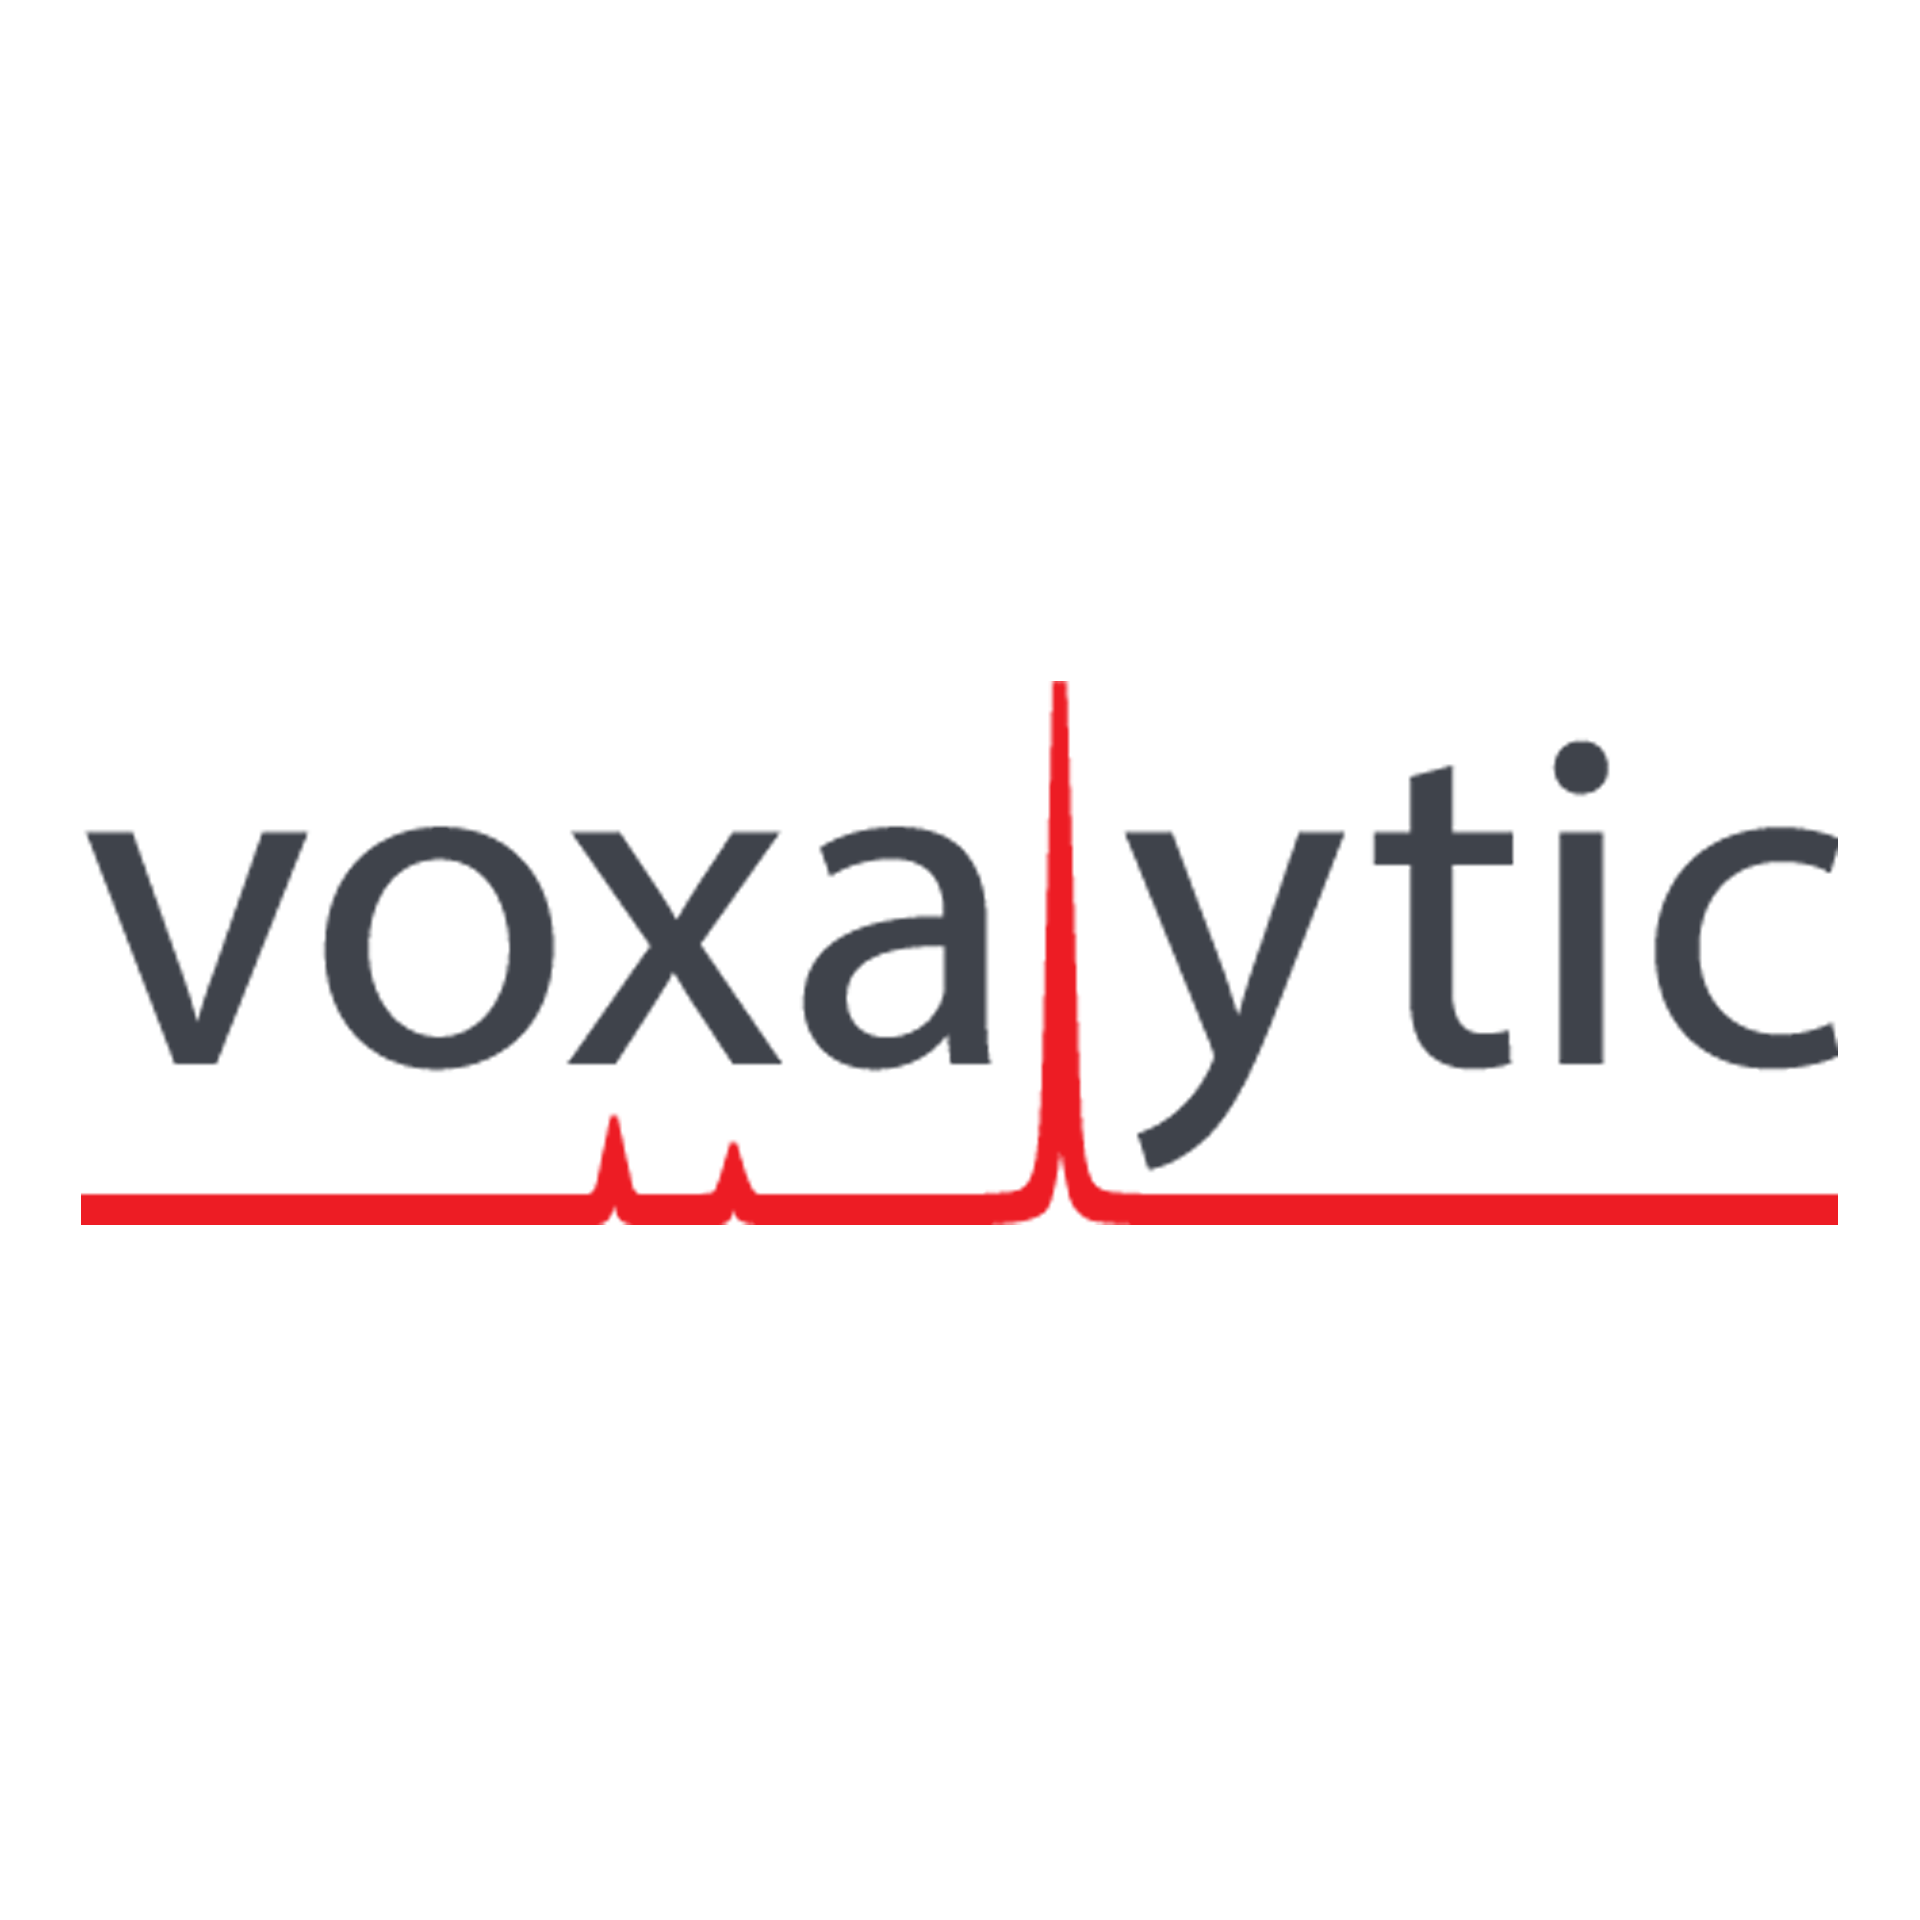 Voxalytic